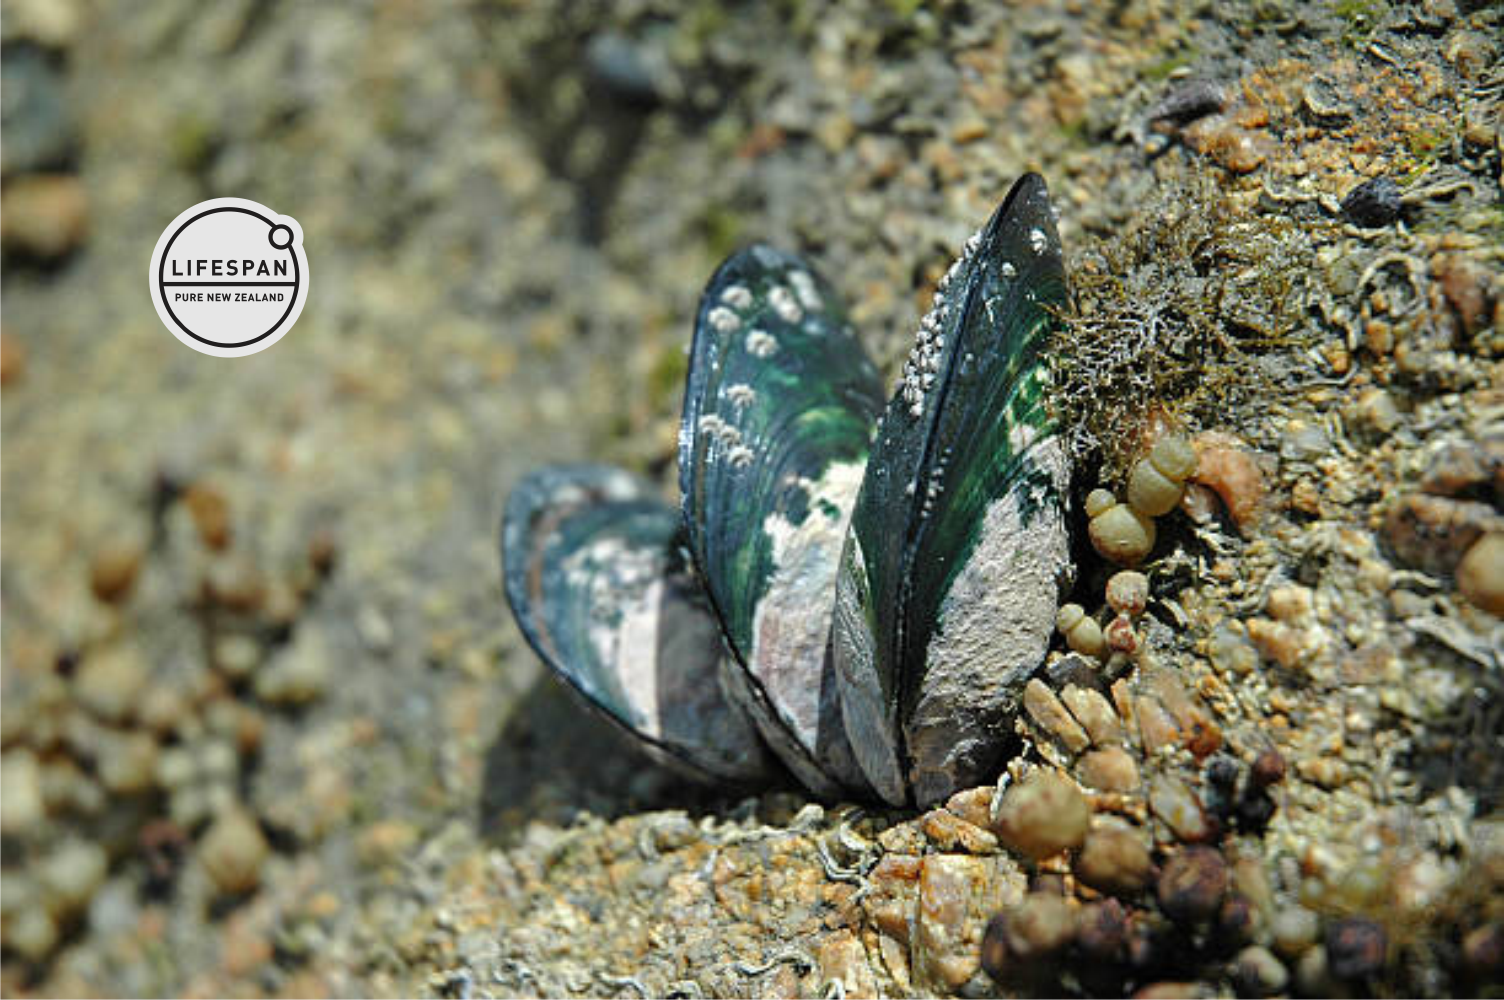 NZ Green Lipped Mussel